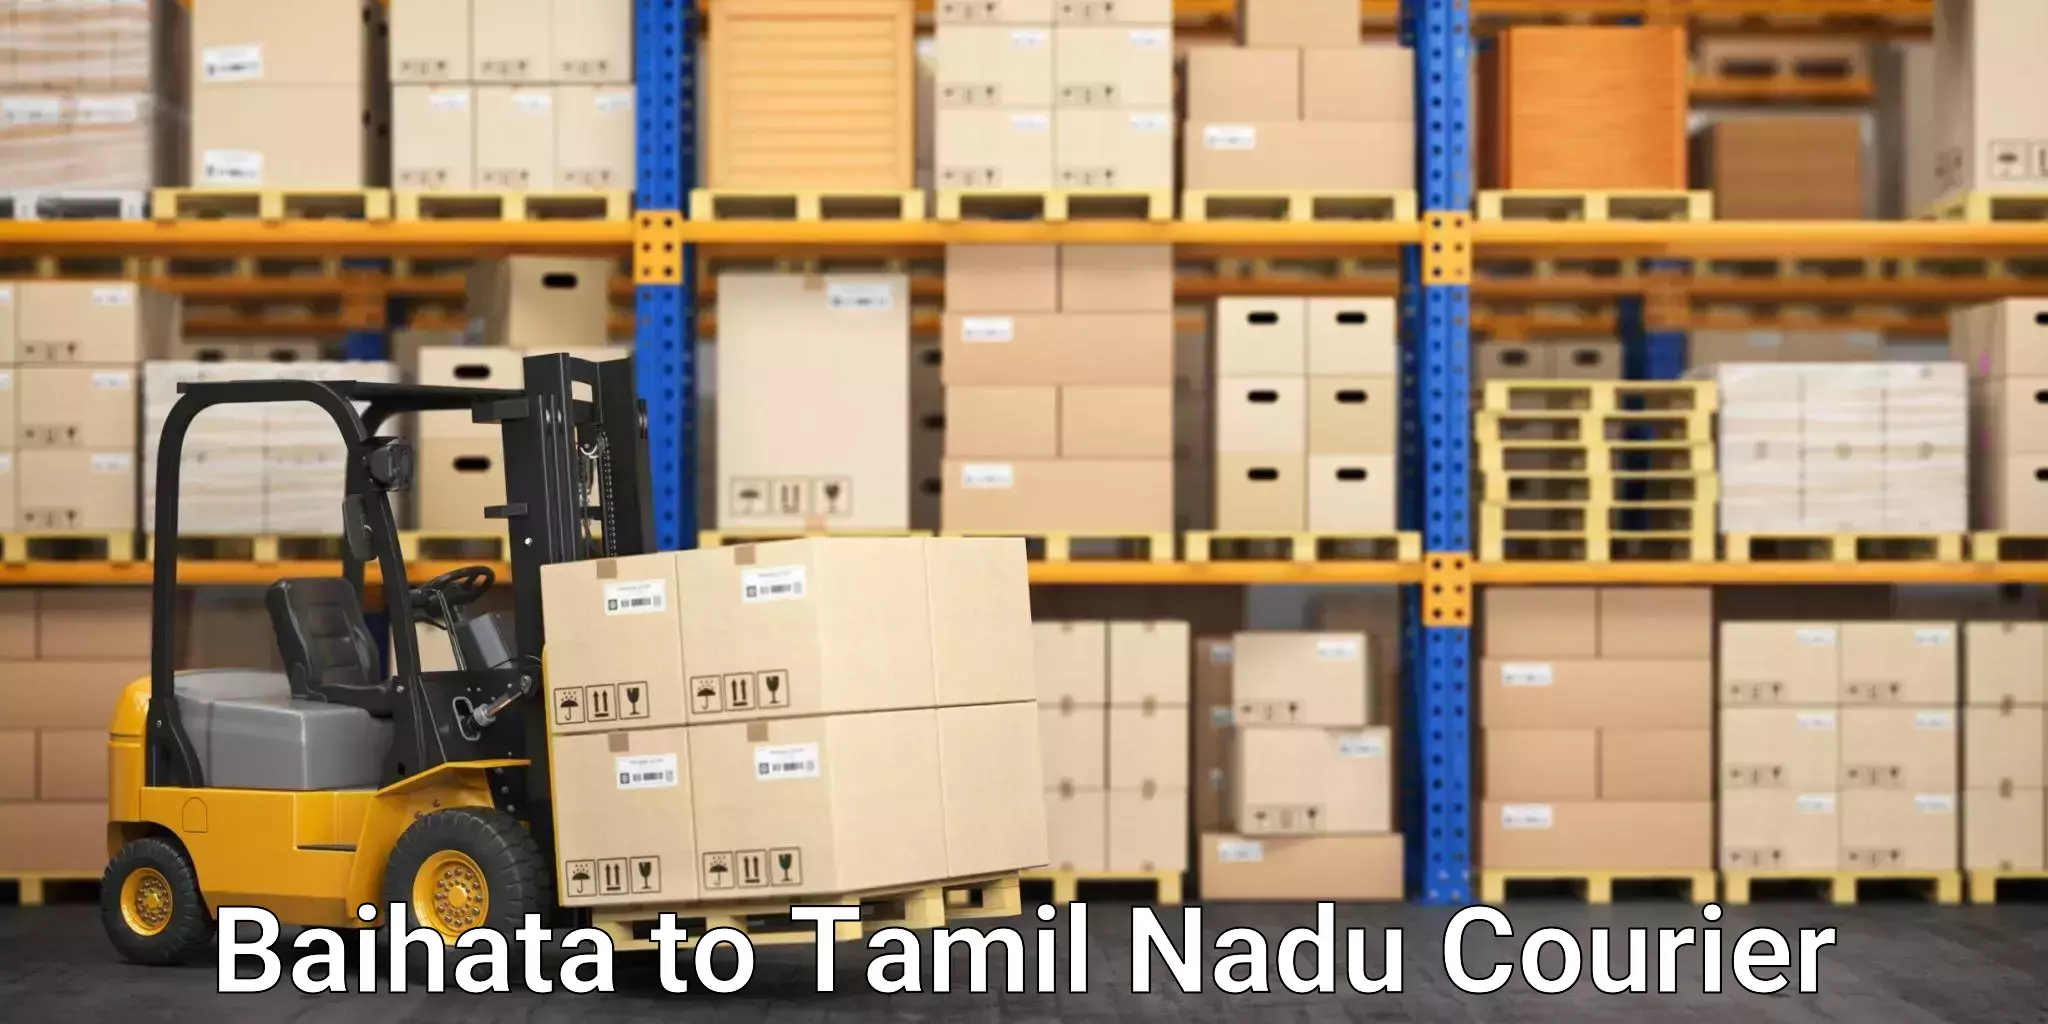 Express shipping Baihata to Tamil Nadu